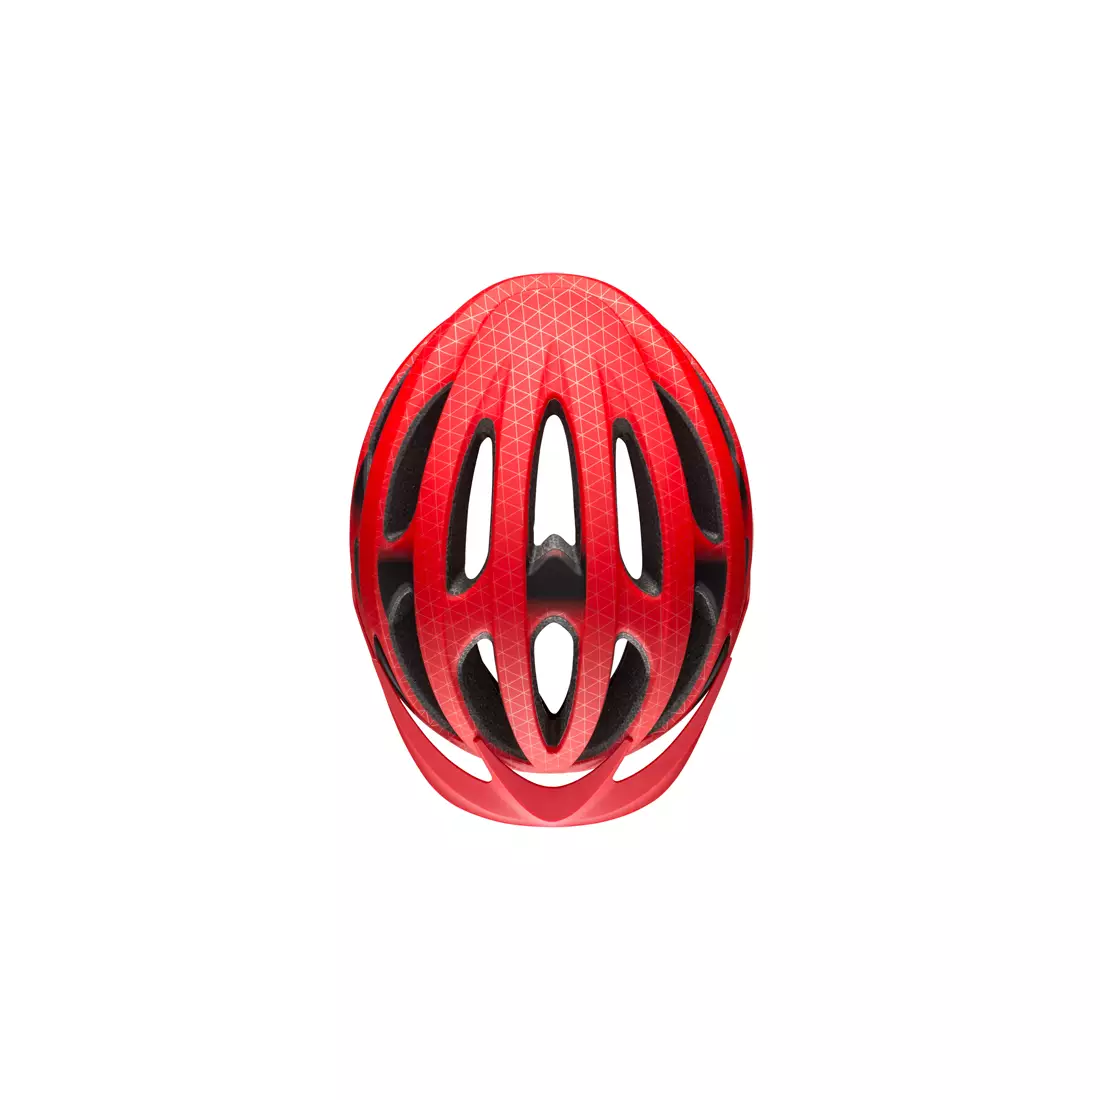 BELL MTB DRIFTER BEL-7088694 cyklistická helma matte gloss red black